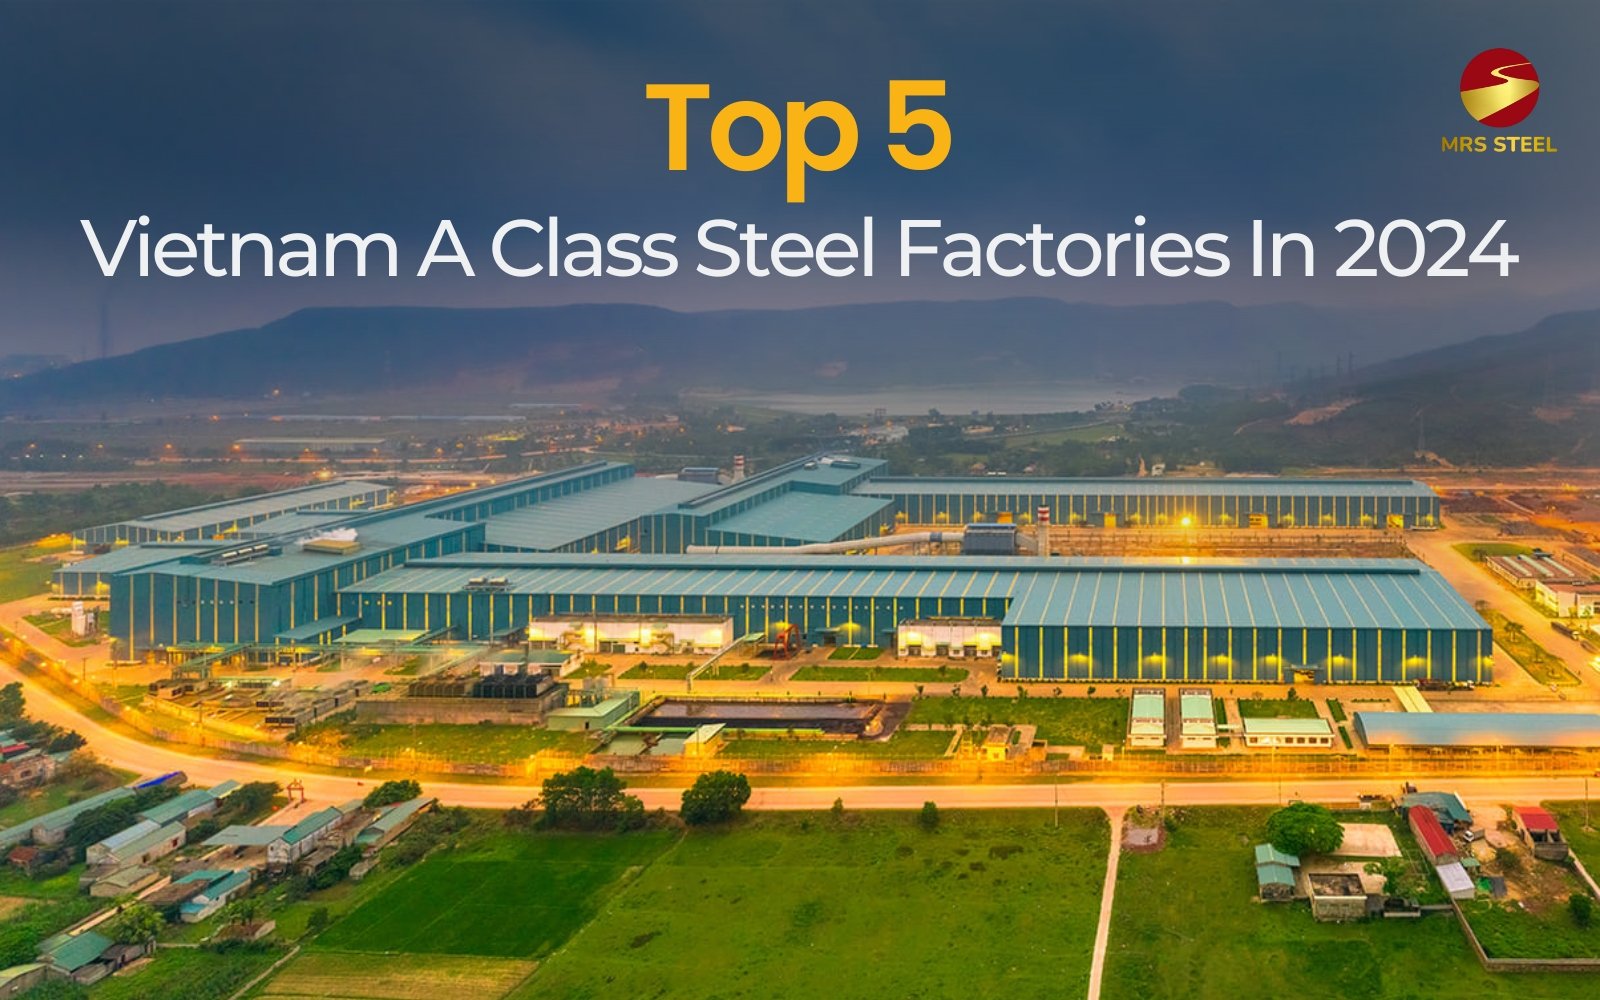 Top 5 Vietnam A class steel factories in 2024